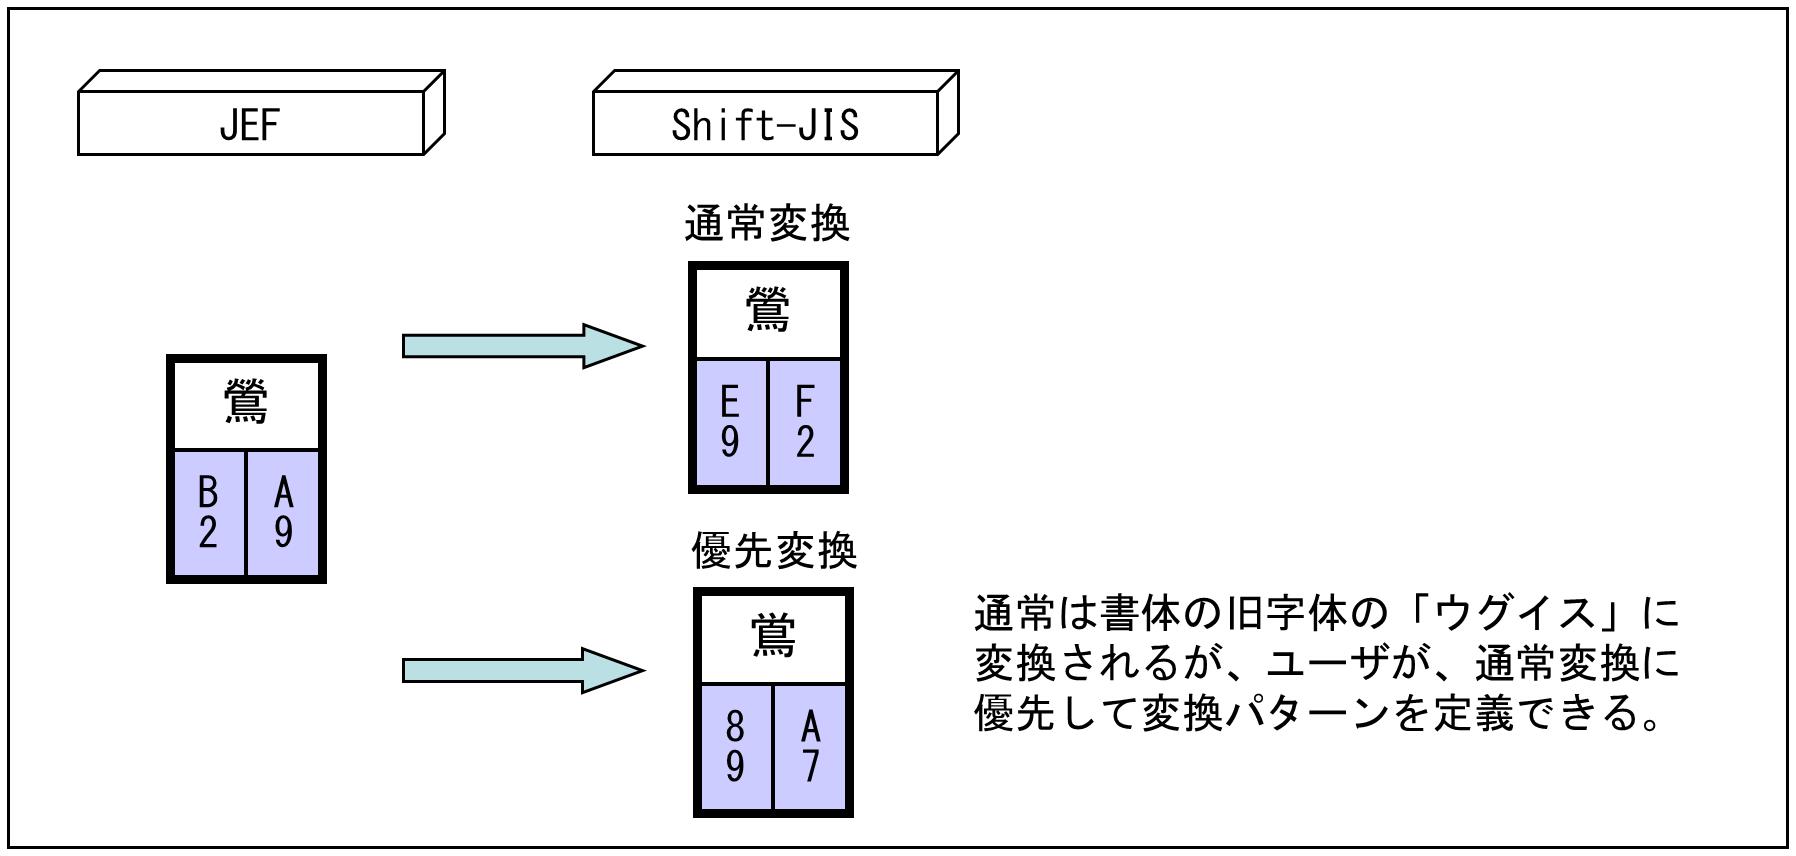 公式 Jis基本漢字のコードをユーザ独自に変換したい場合